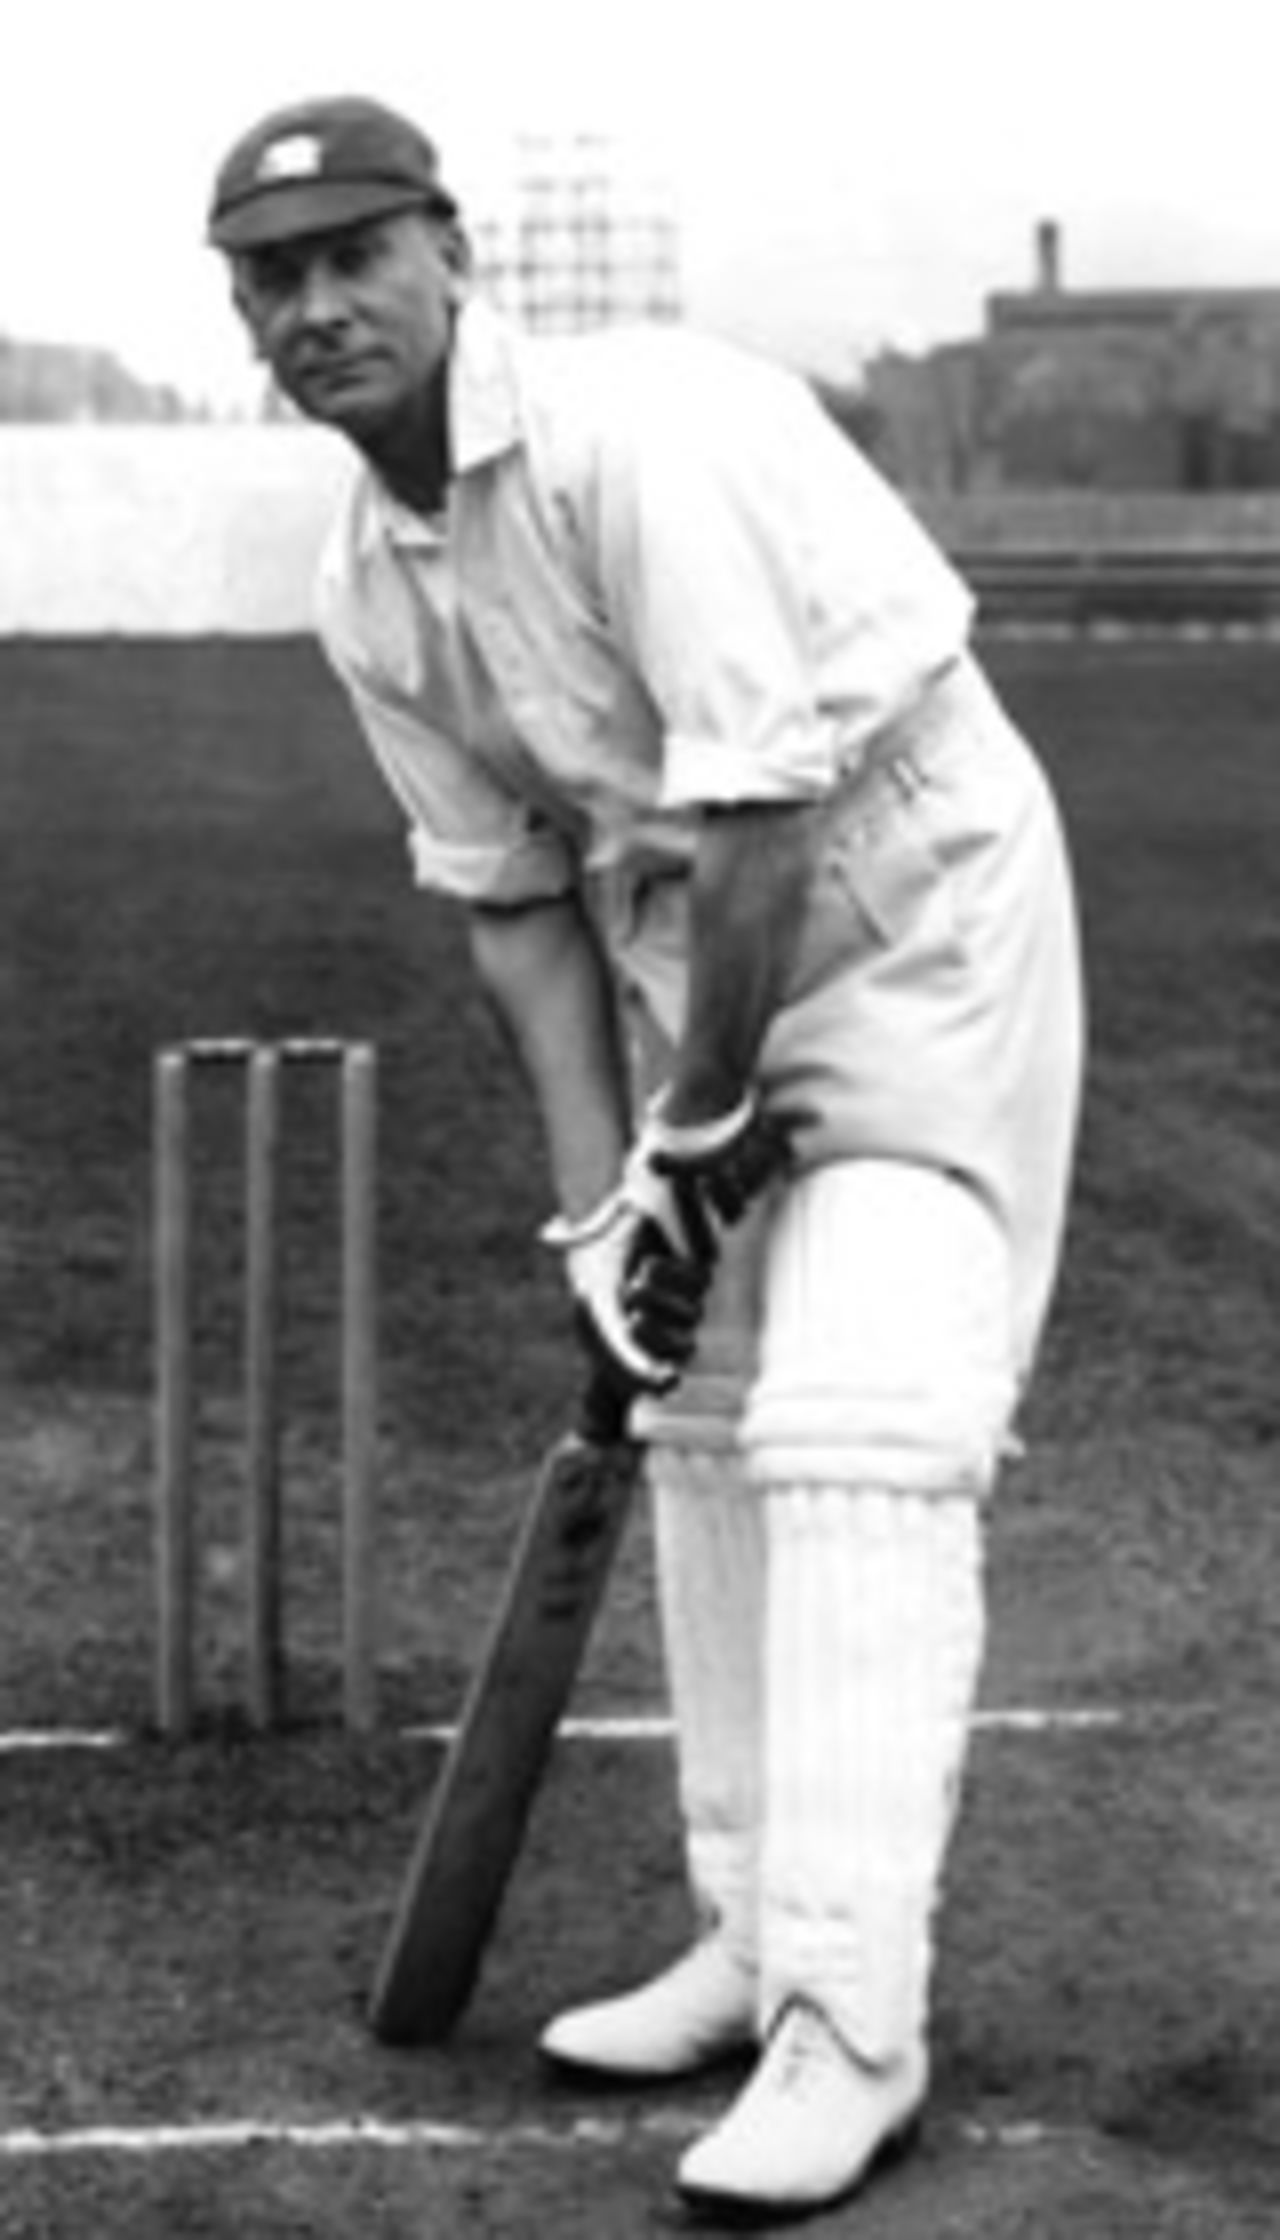 Jack Hobbs at the crease, 1930